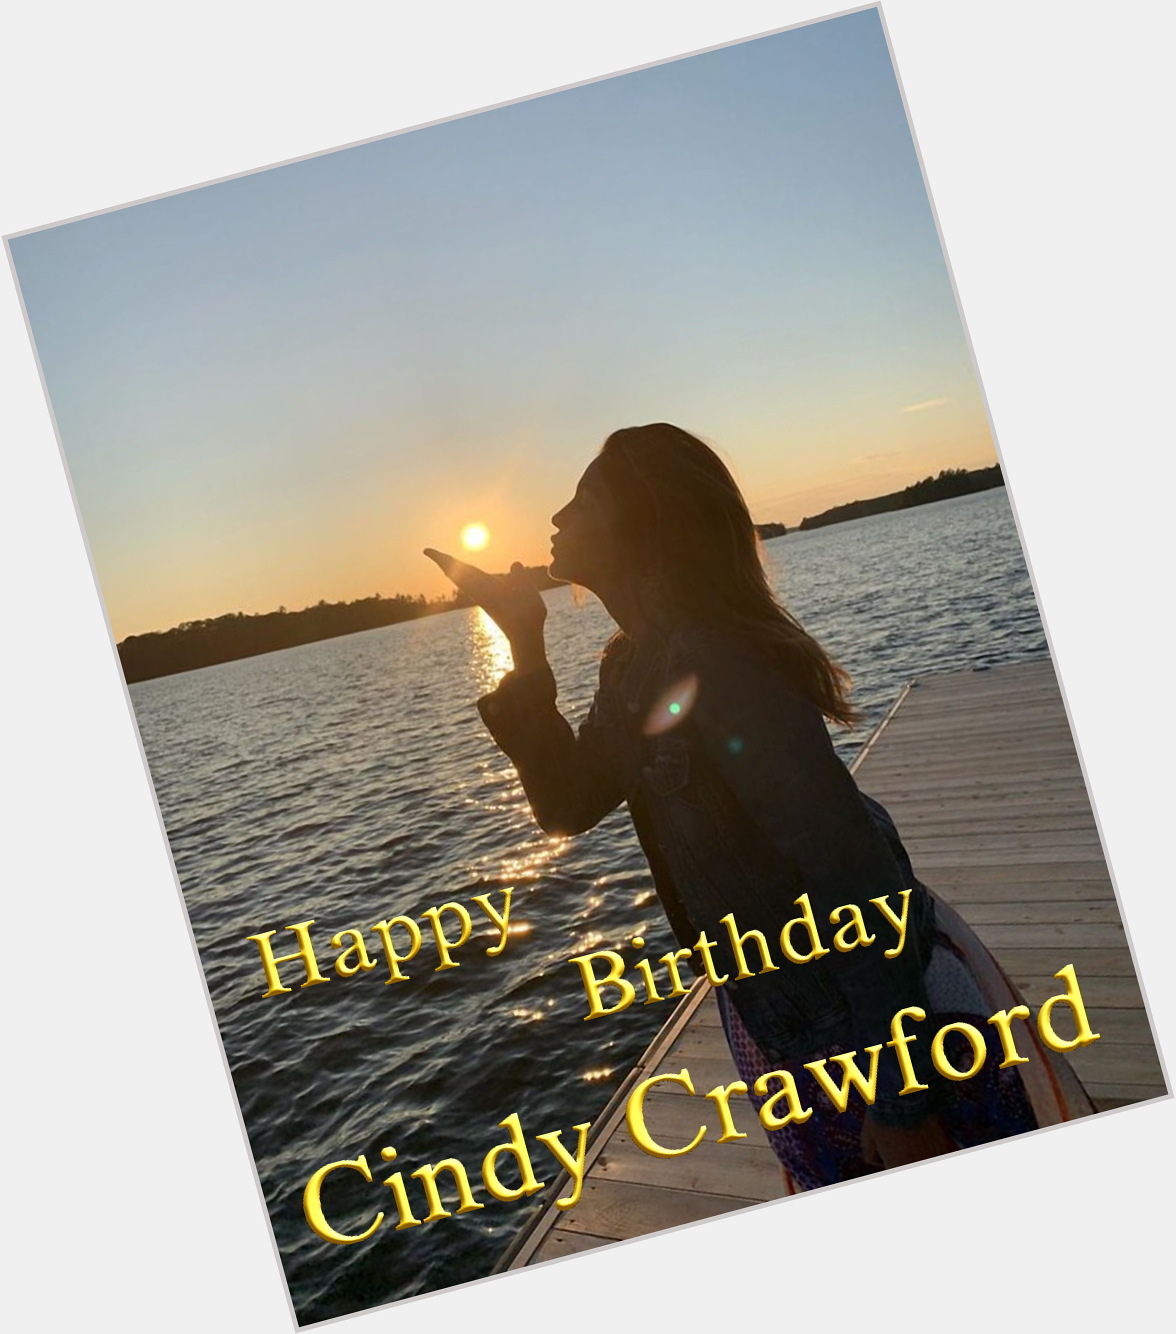  Happy Birthday  Cindy Crawford
 